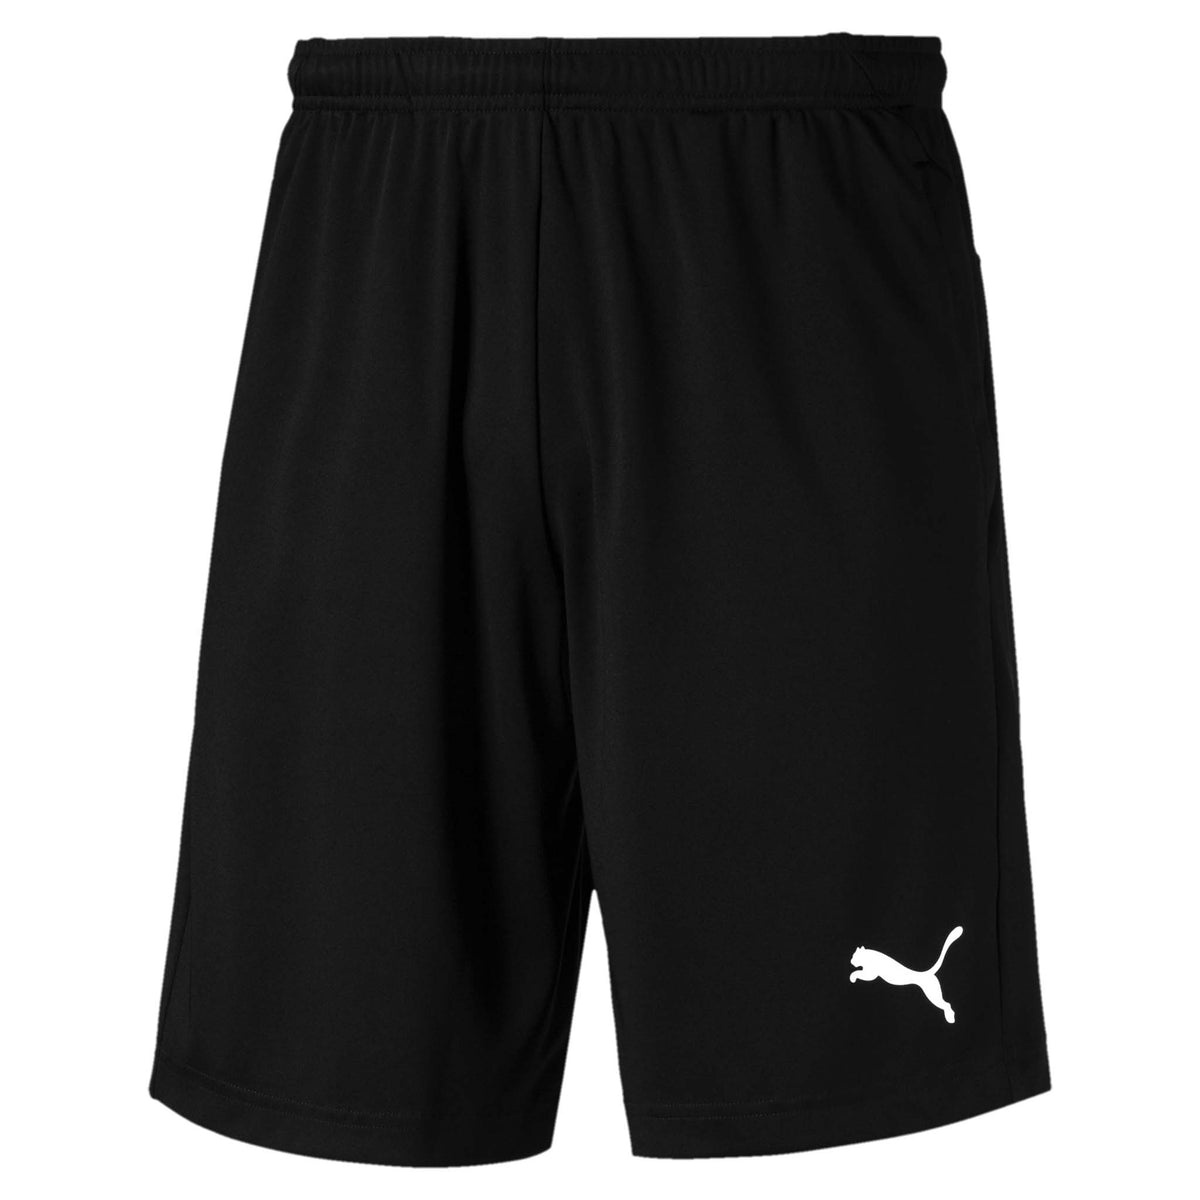 Puma Liga shorts de soccer noir